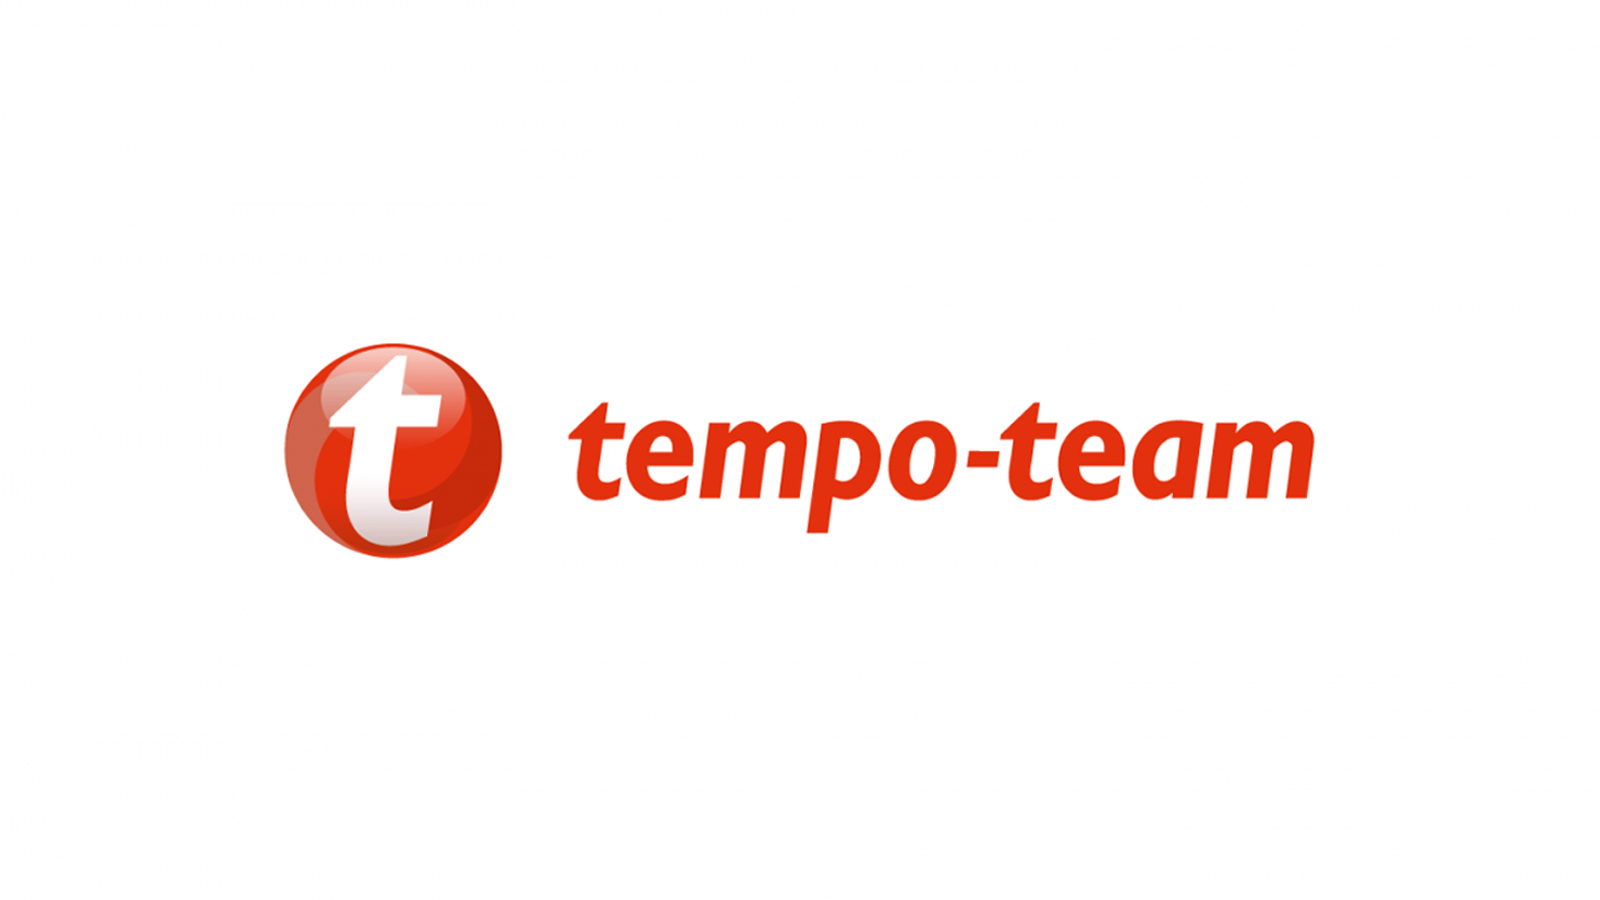 Tempo team